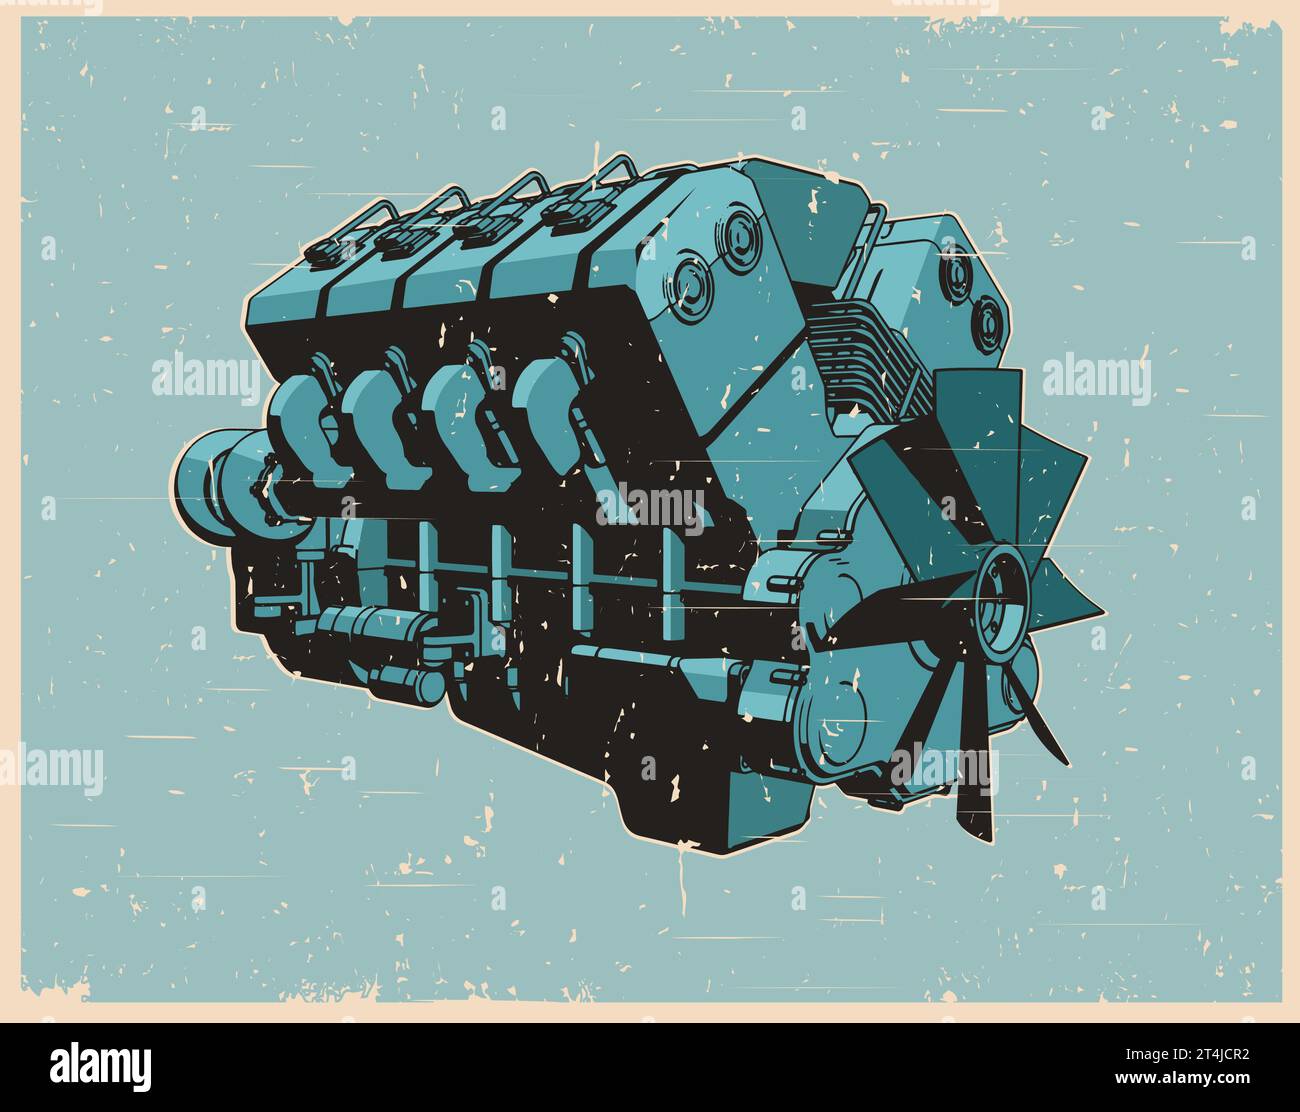 Illustrazione vettoriale stilizzata di un motore turbo diesel in stile retro poster Illustrazione Vettoriale